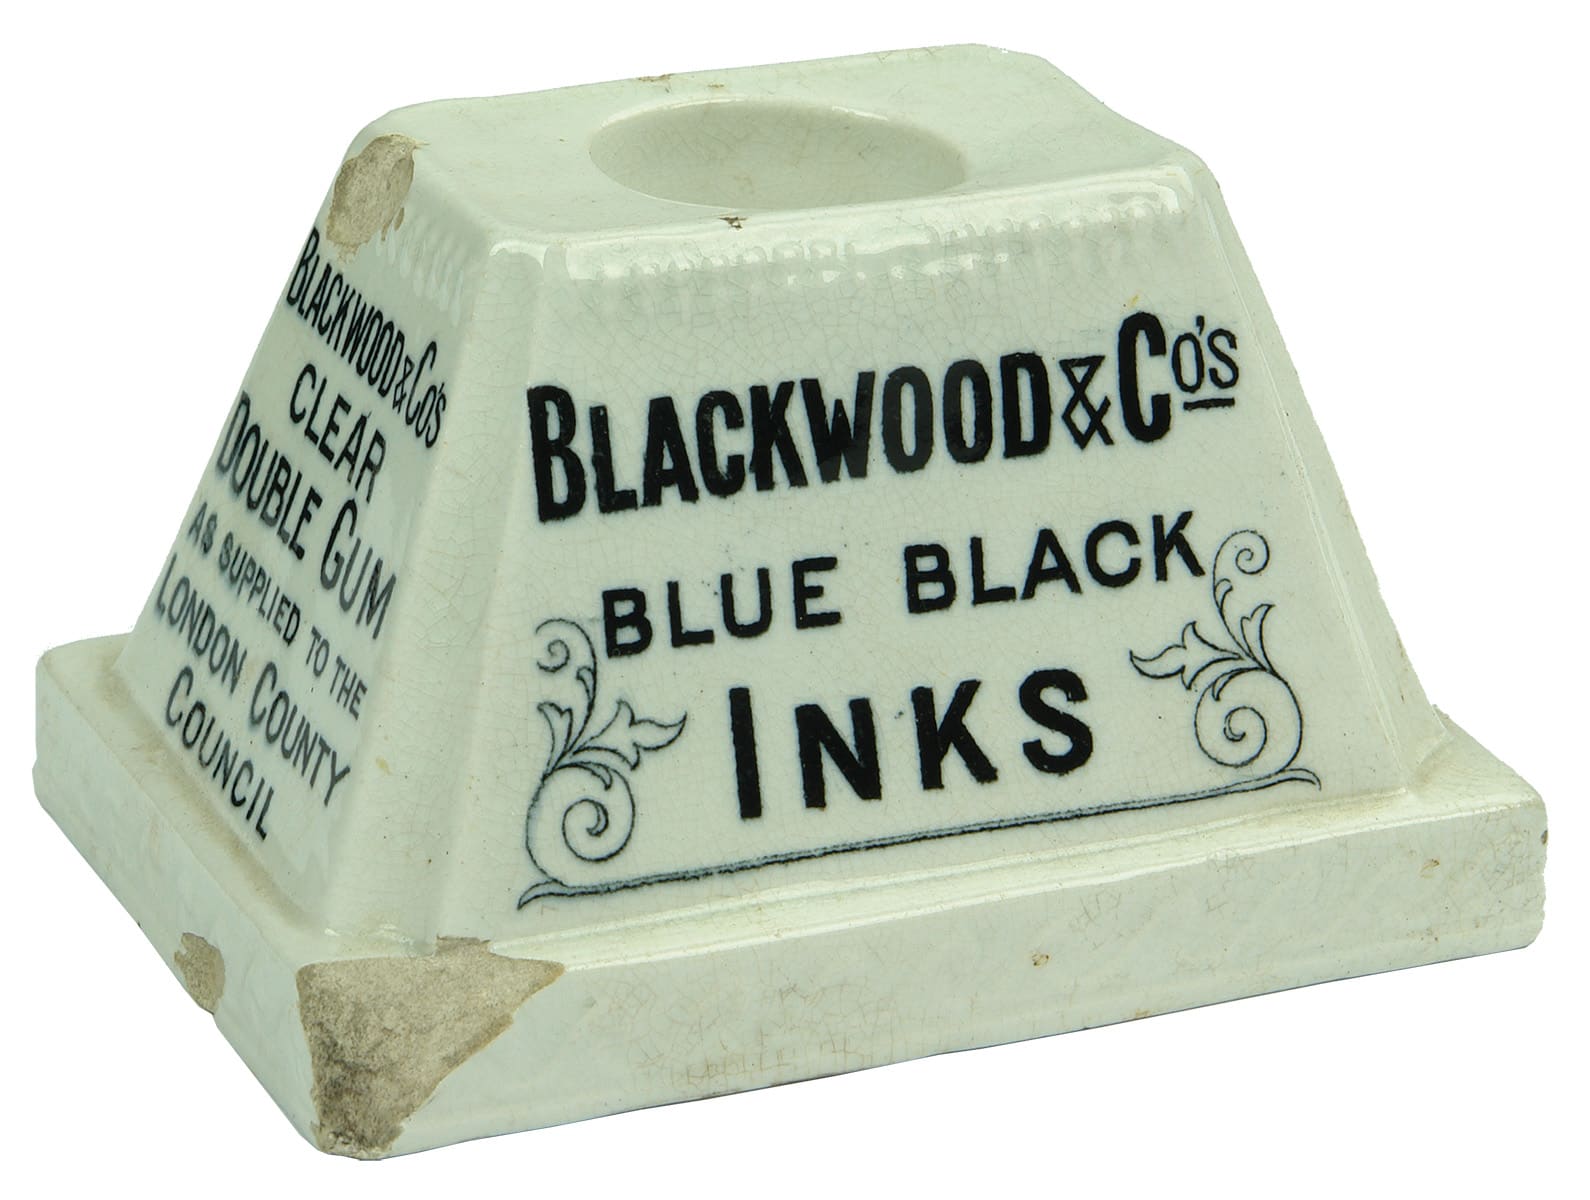 Blackwood Blue Black Inks Stickall Advertising